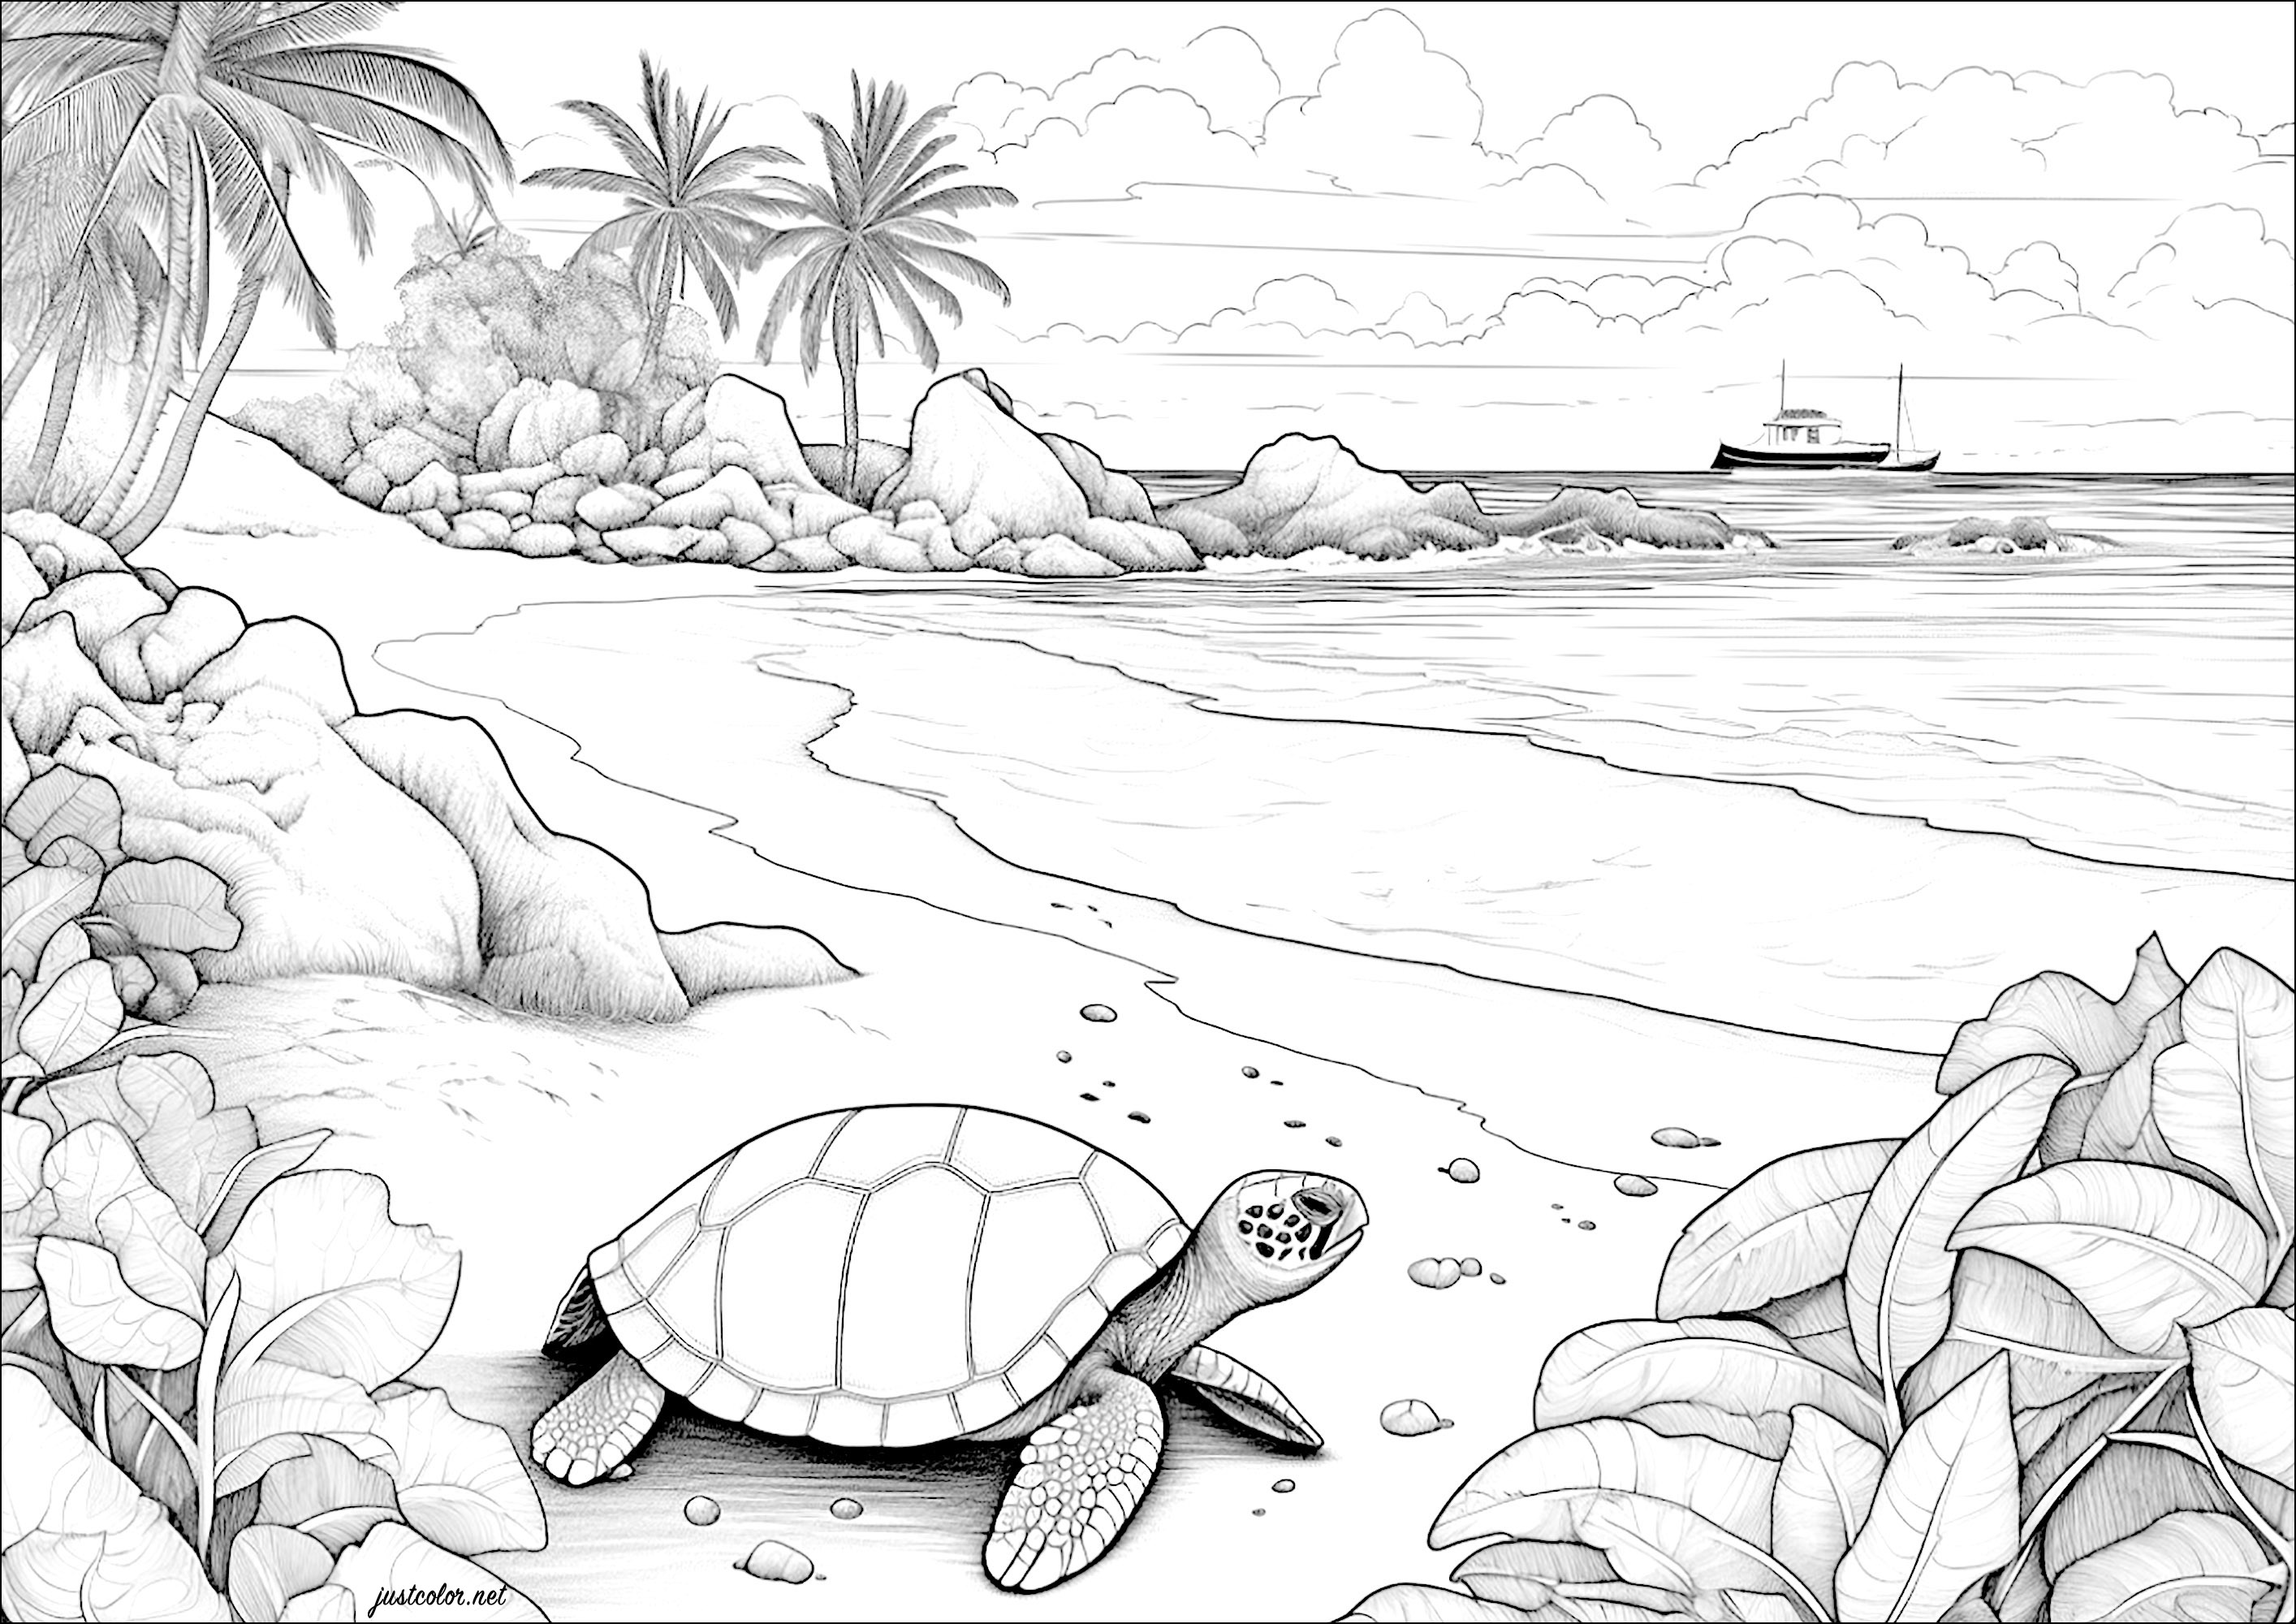 Tartaruga numa praia com um barco à distância. Gostaria de viajar para esta ilha paradisíaca?